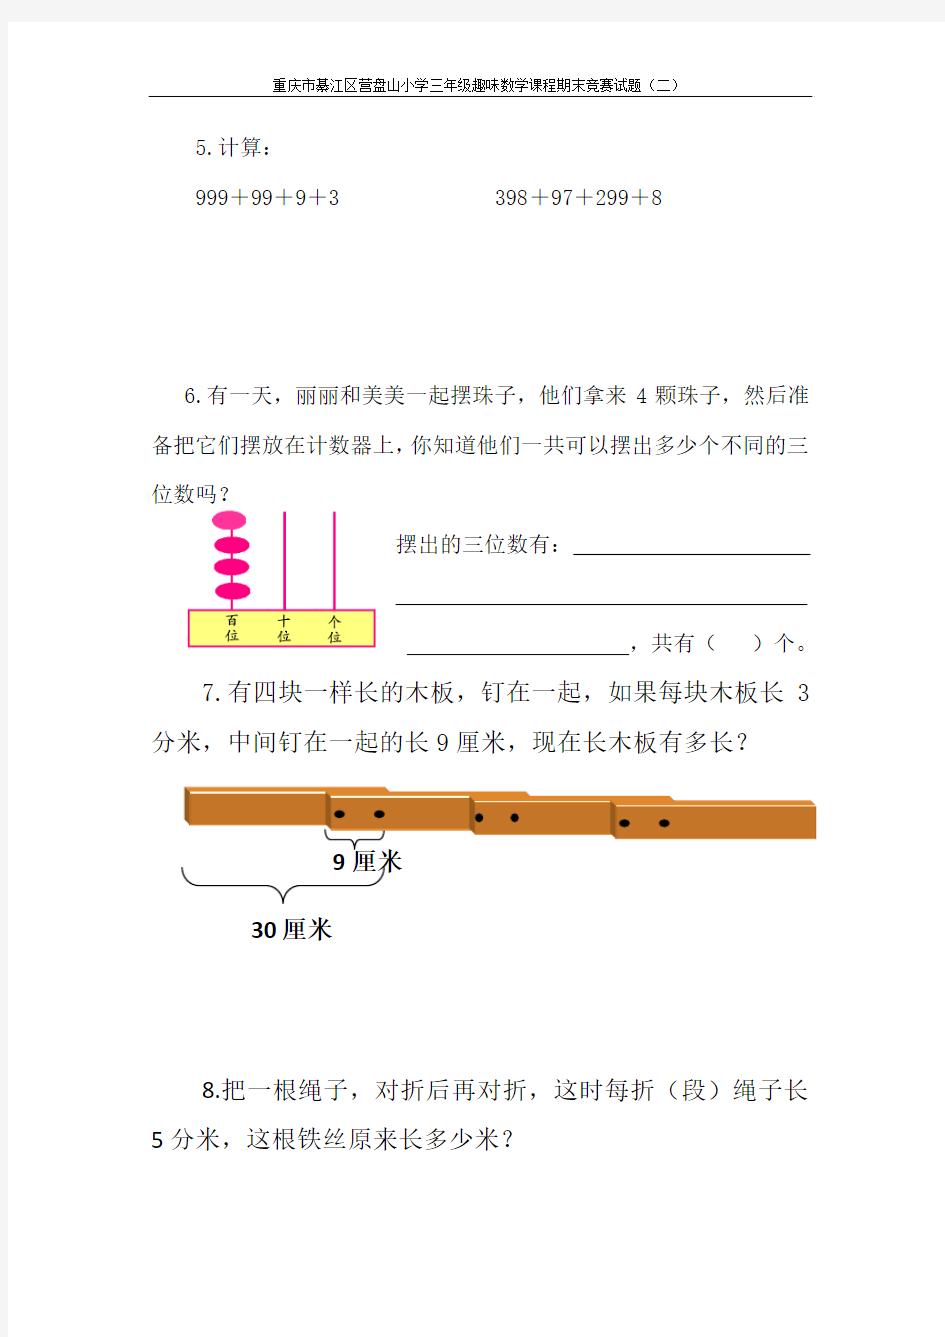 重庆綦江区营盘山小学二年级趣味数学课程期末竞赛试题(二)